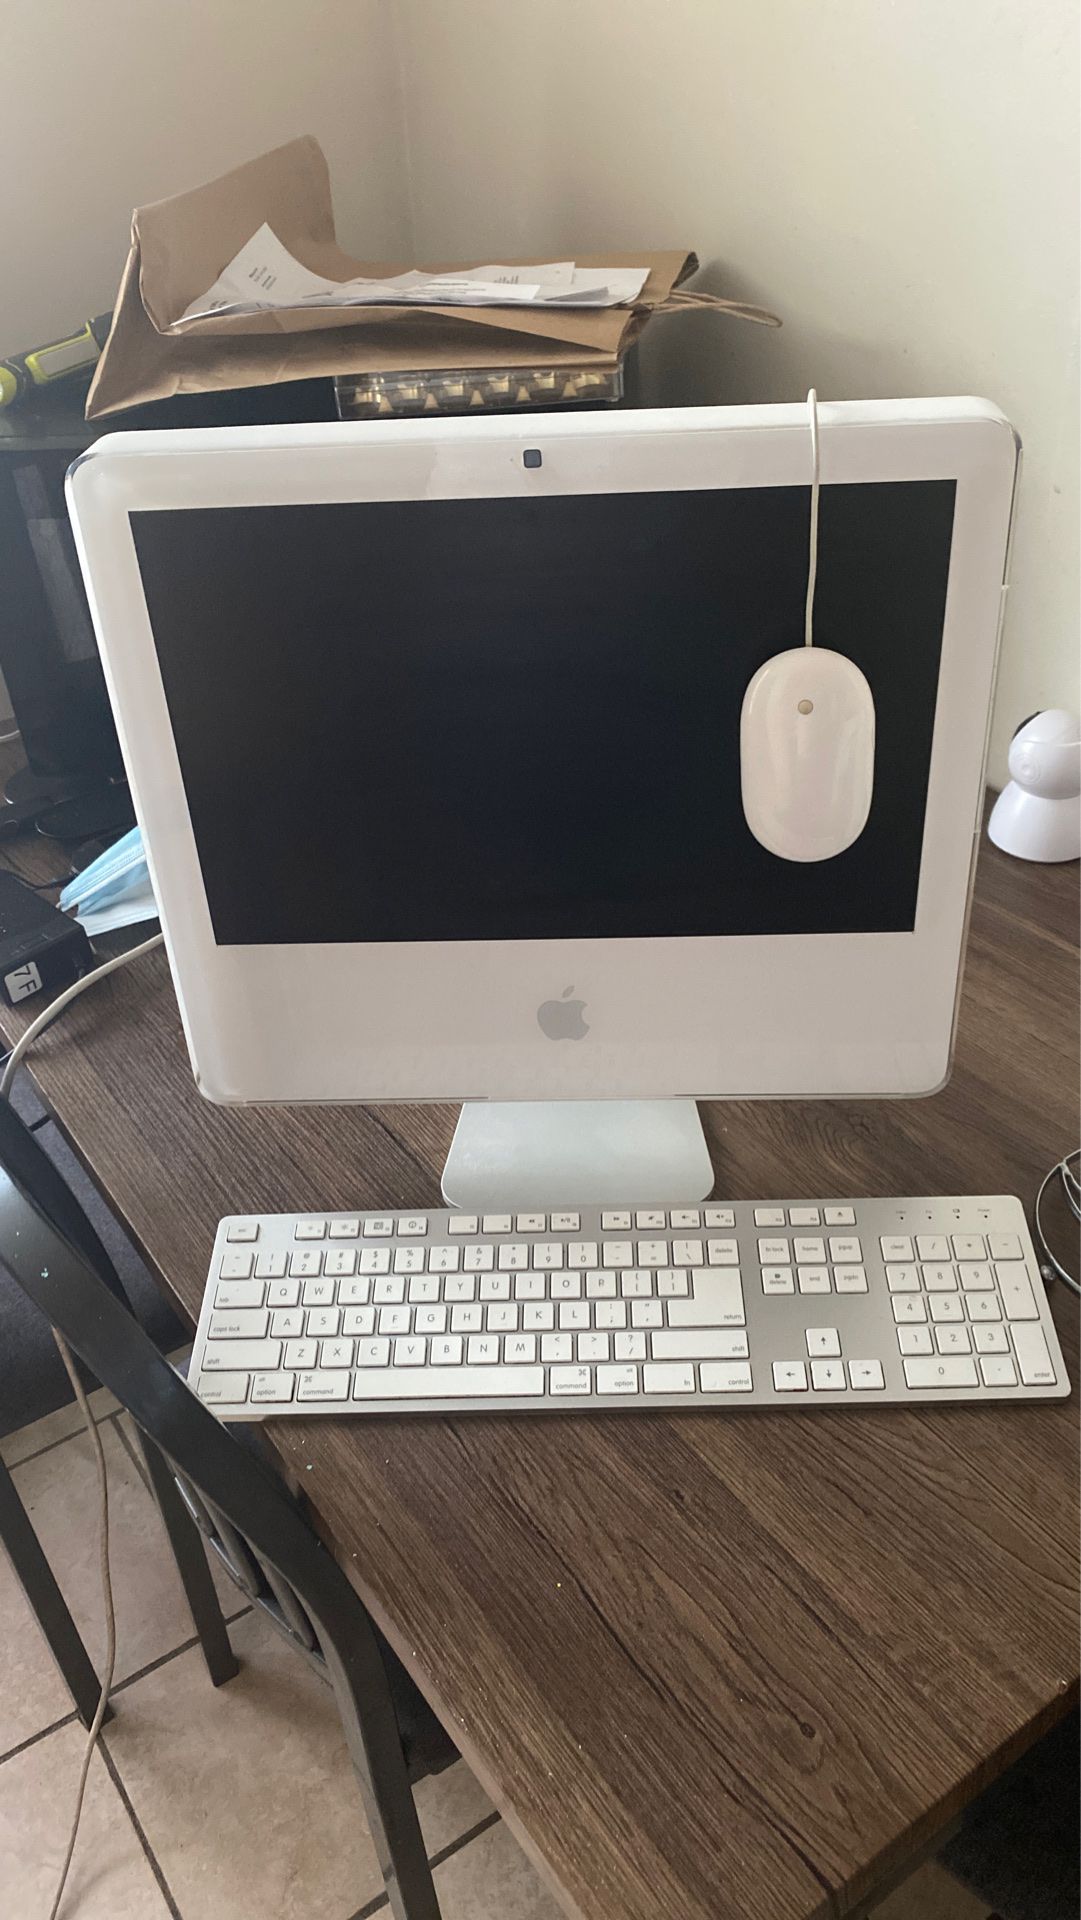 Apple MAC For Sale! Need it gone ASAP